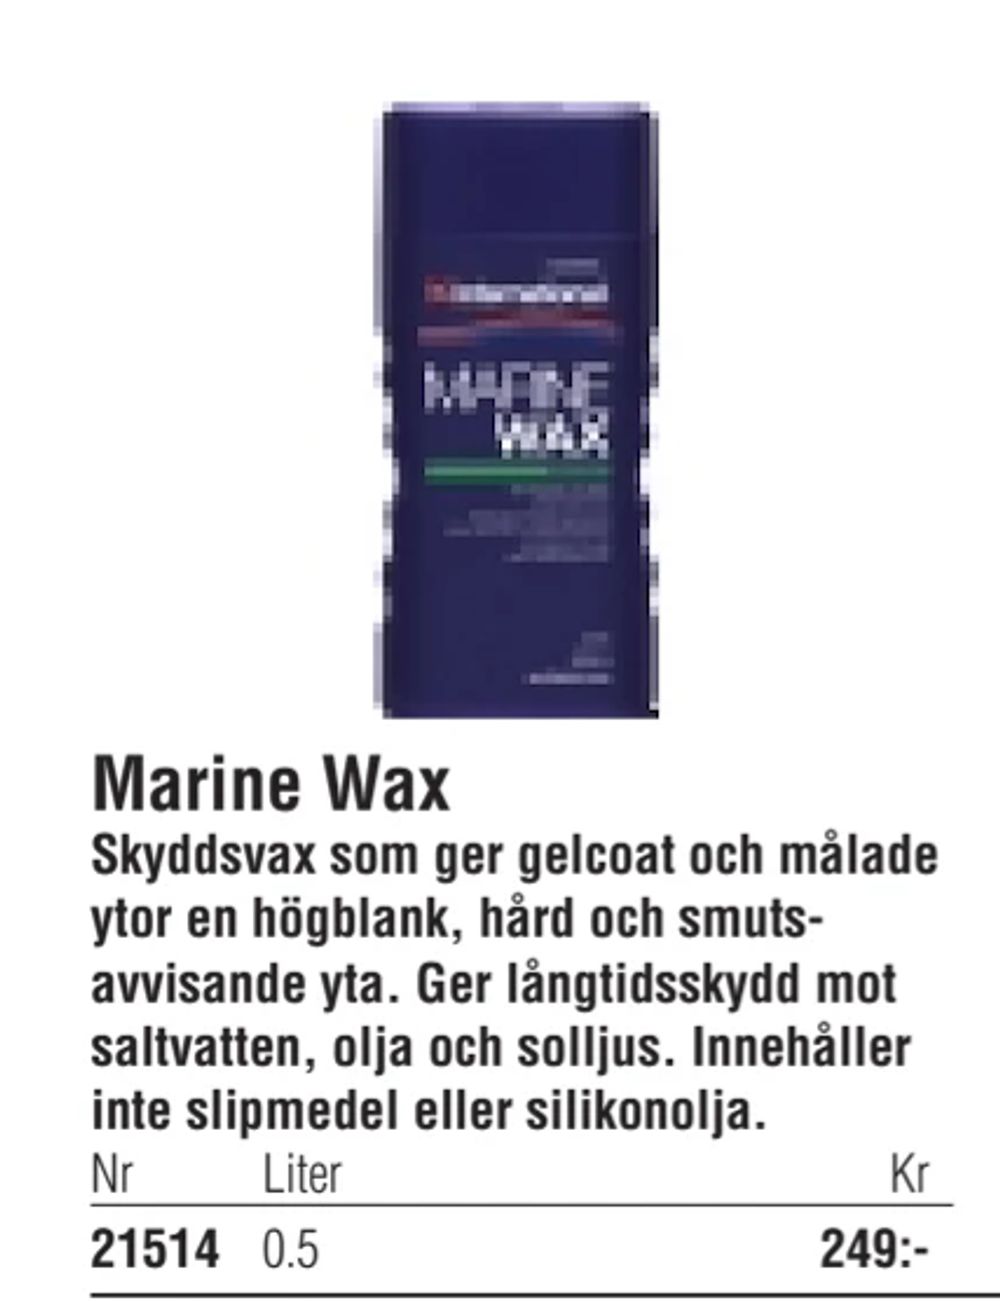 Erbjudanden på Marine Wax från Erlandsons Brygga för 249 kr